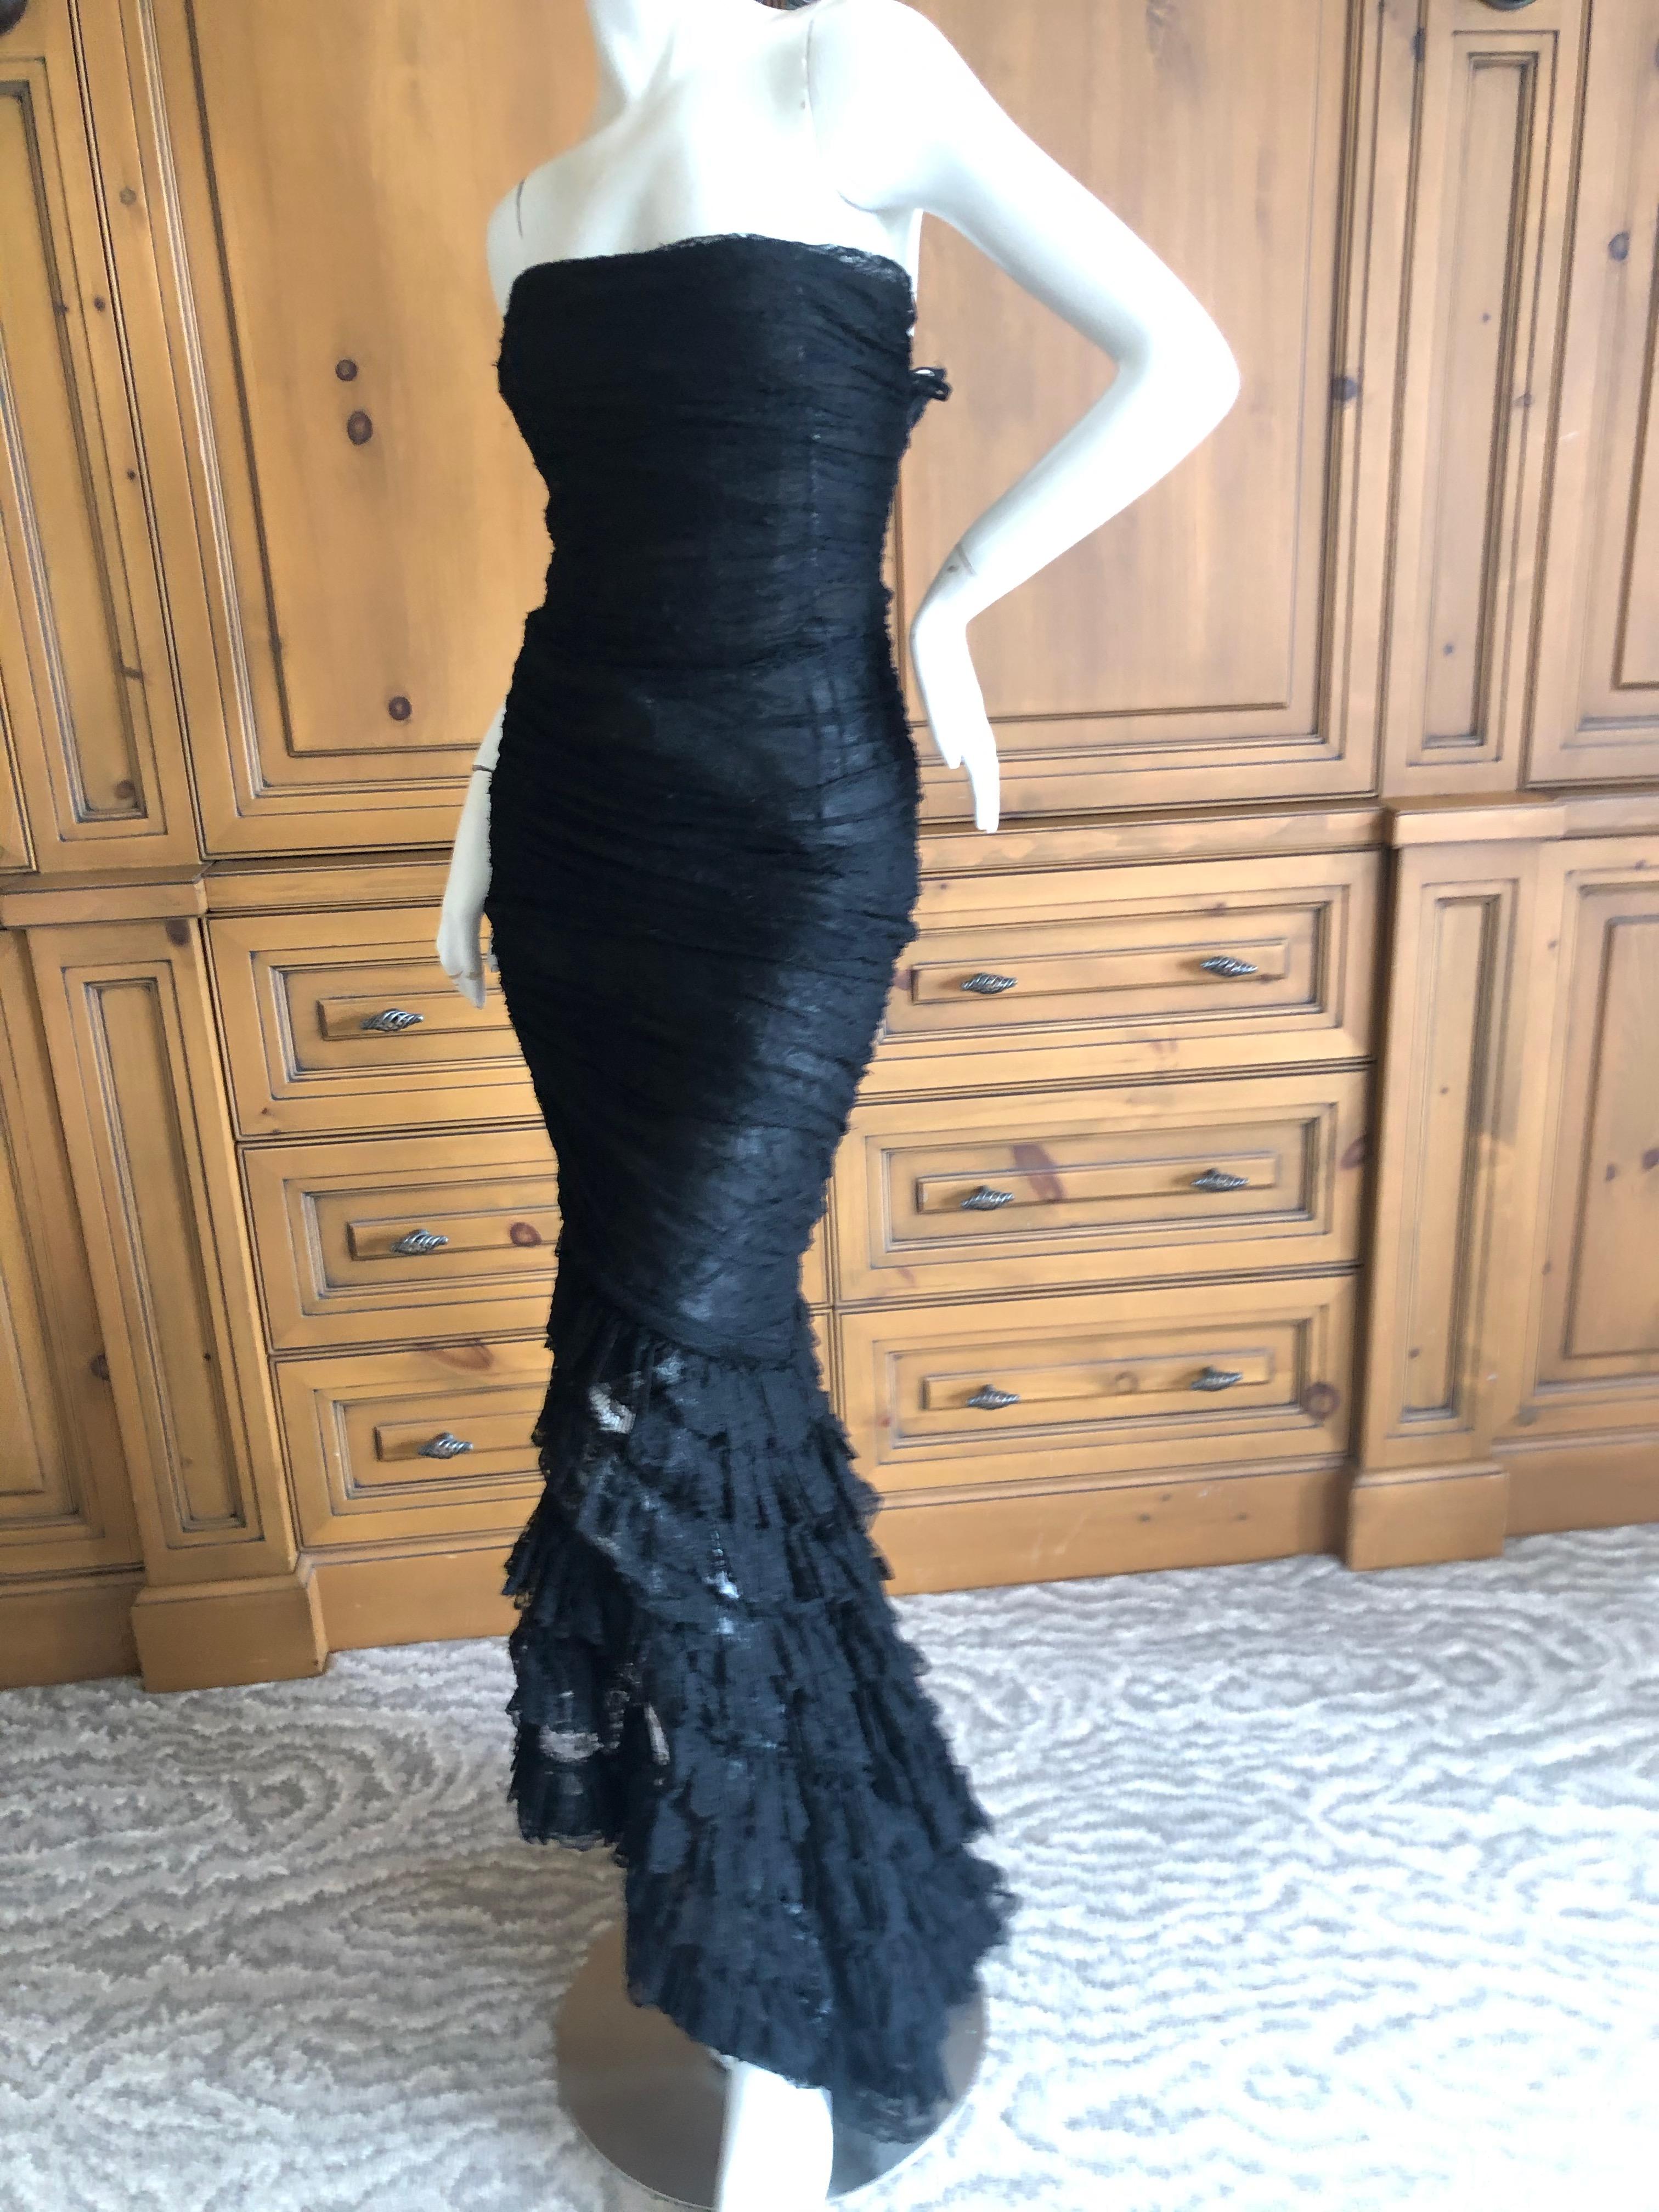  Oscar de la Renta Vintage 1980's Black Lace Evening Dress with Flamenco Ruffles For Sale 6